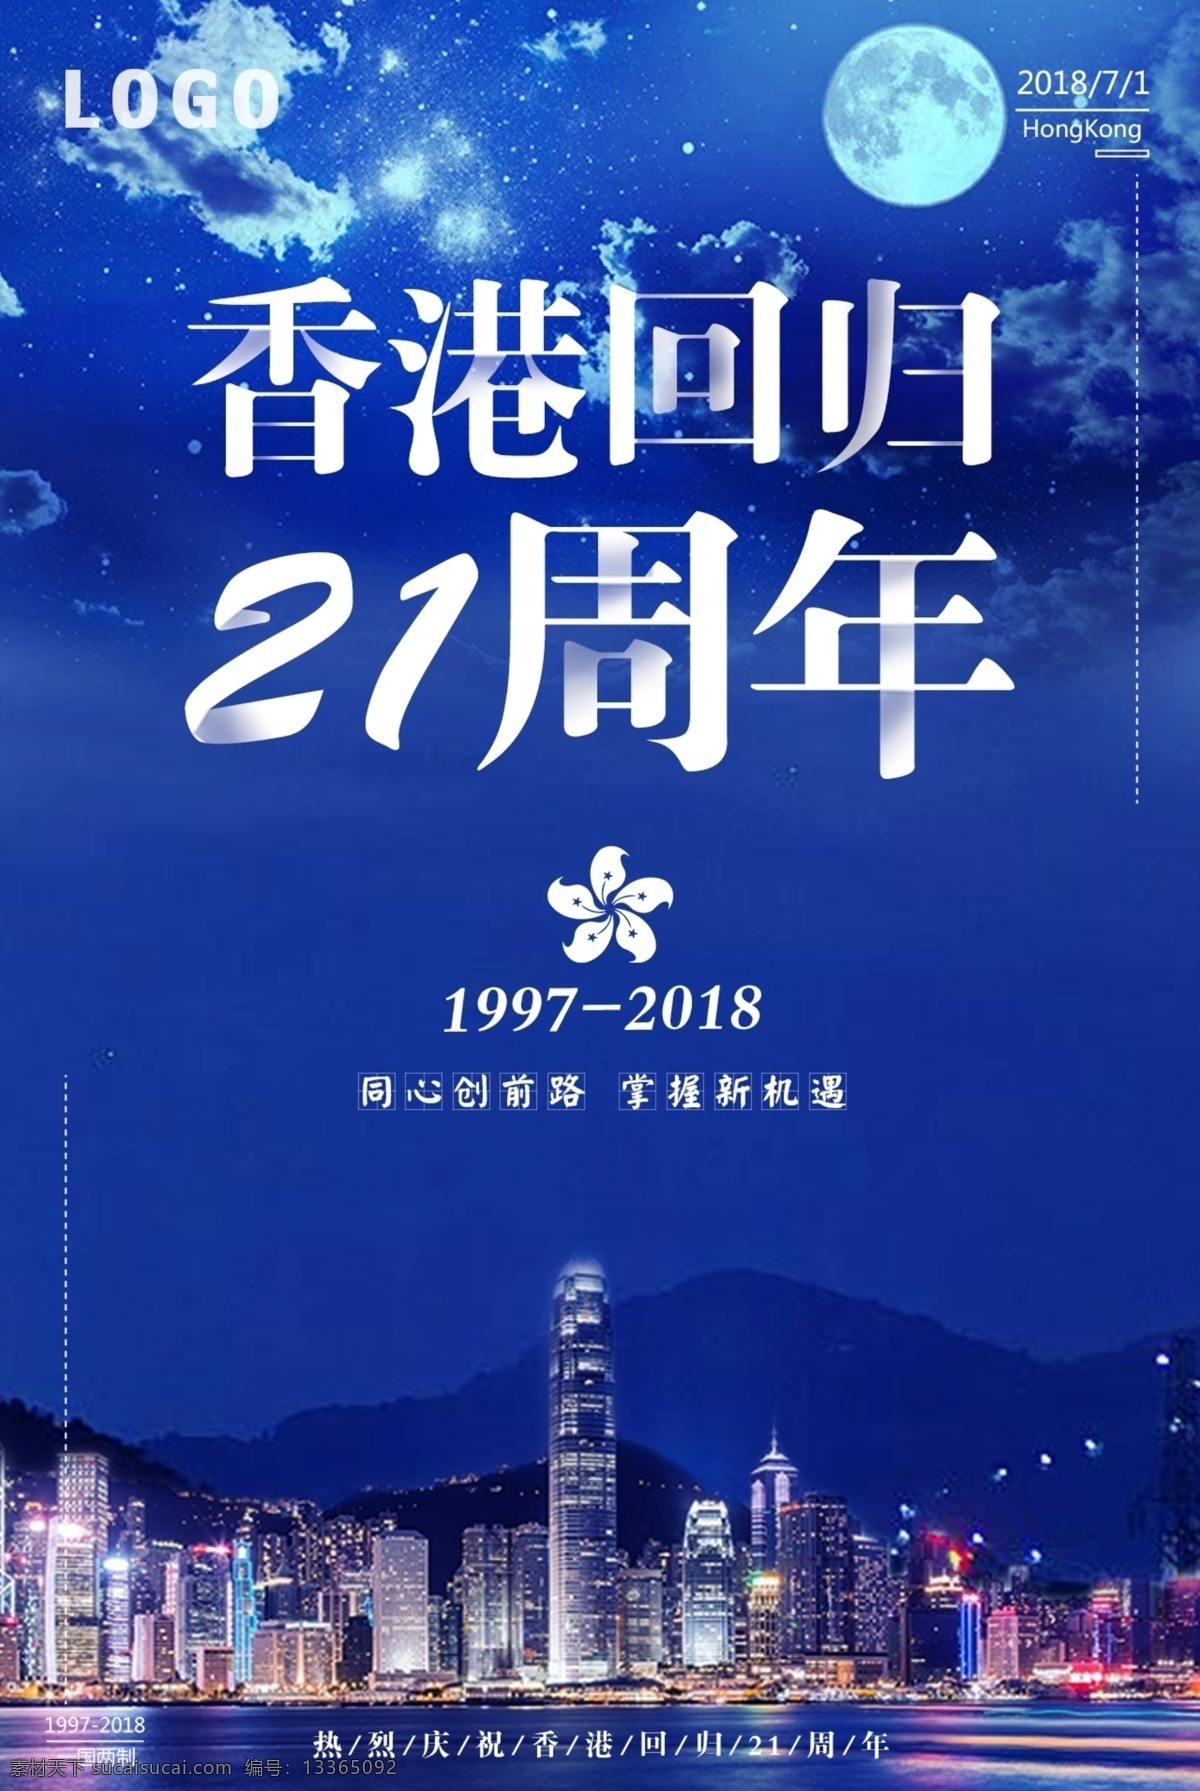 蓝色 夜空 香港 回归 周年纪念 海报 蓝色夜空 香港回归 简约大气 祖国万岁 一国两制